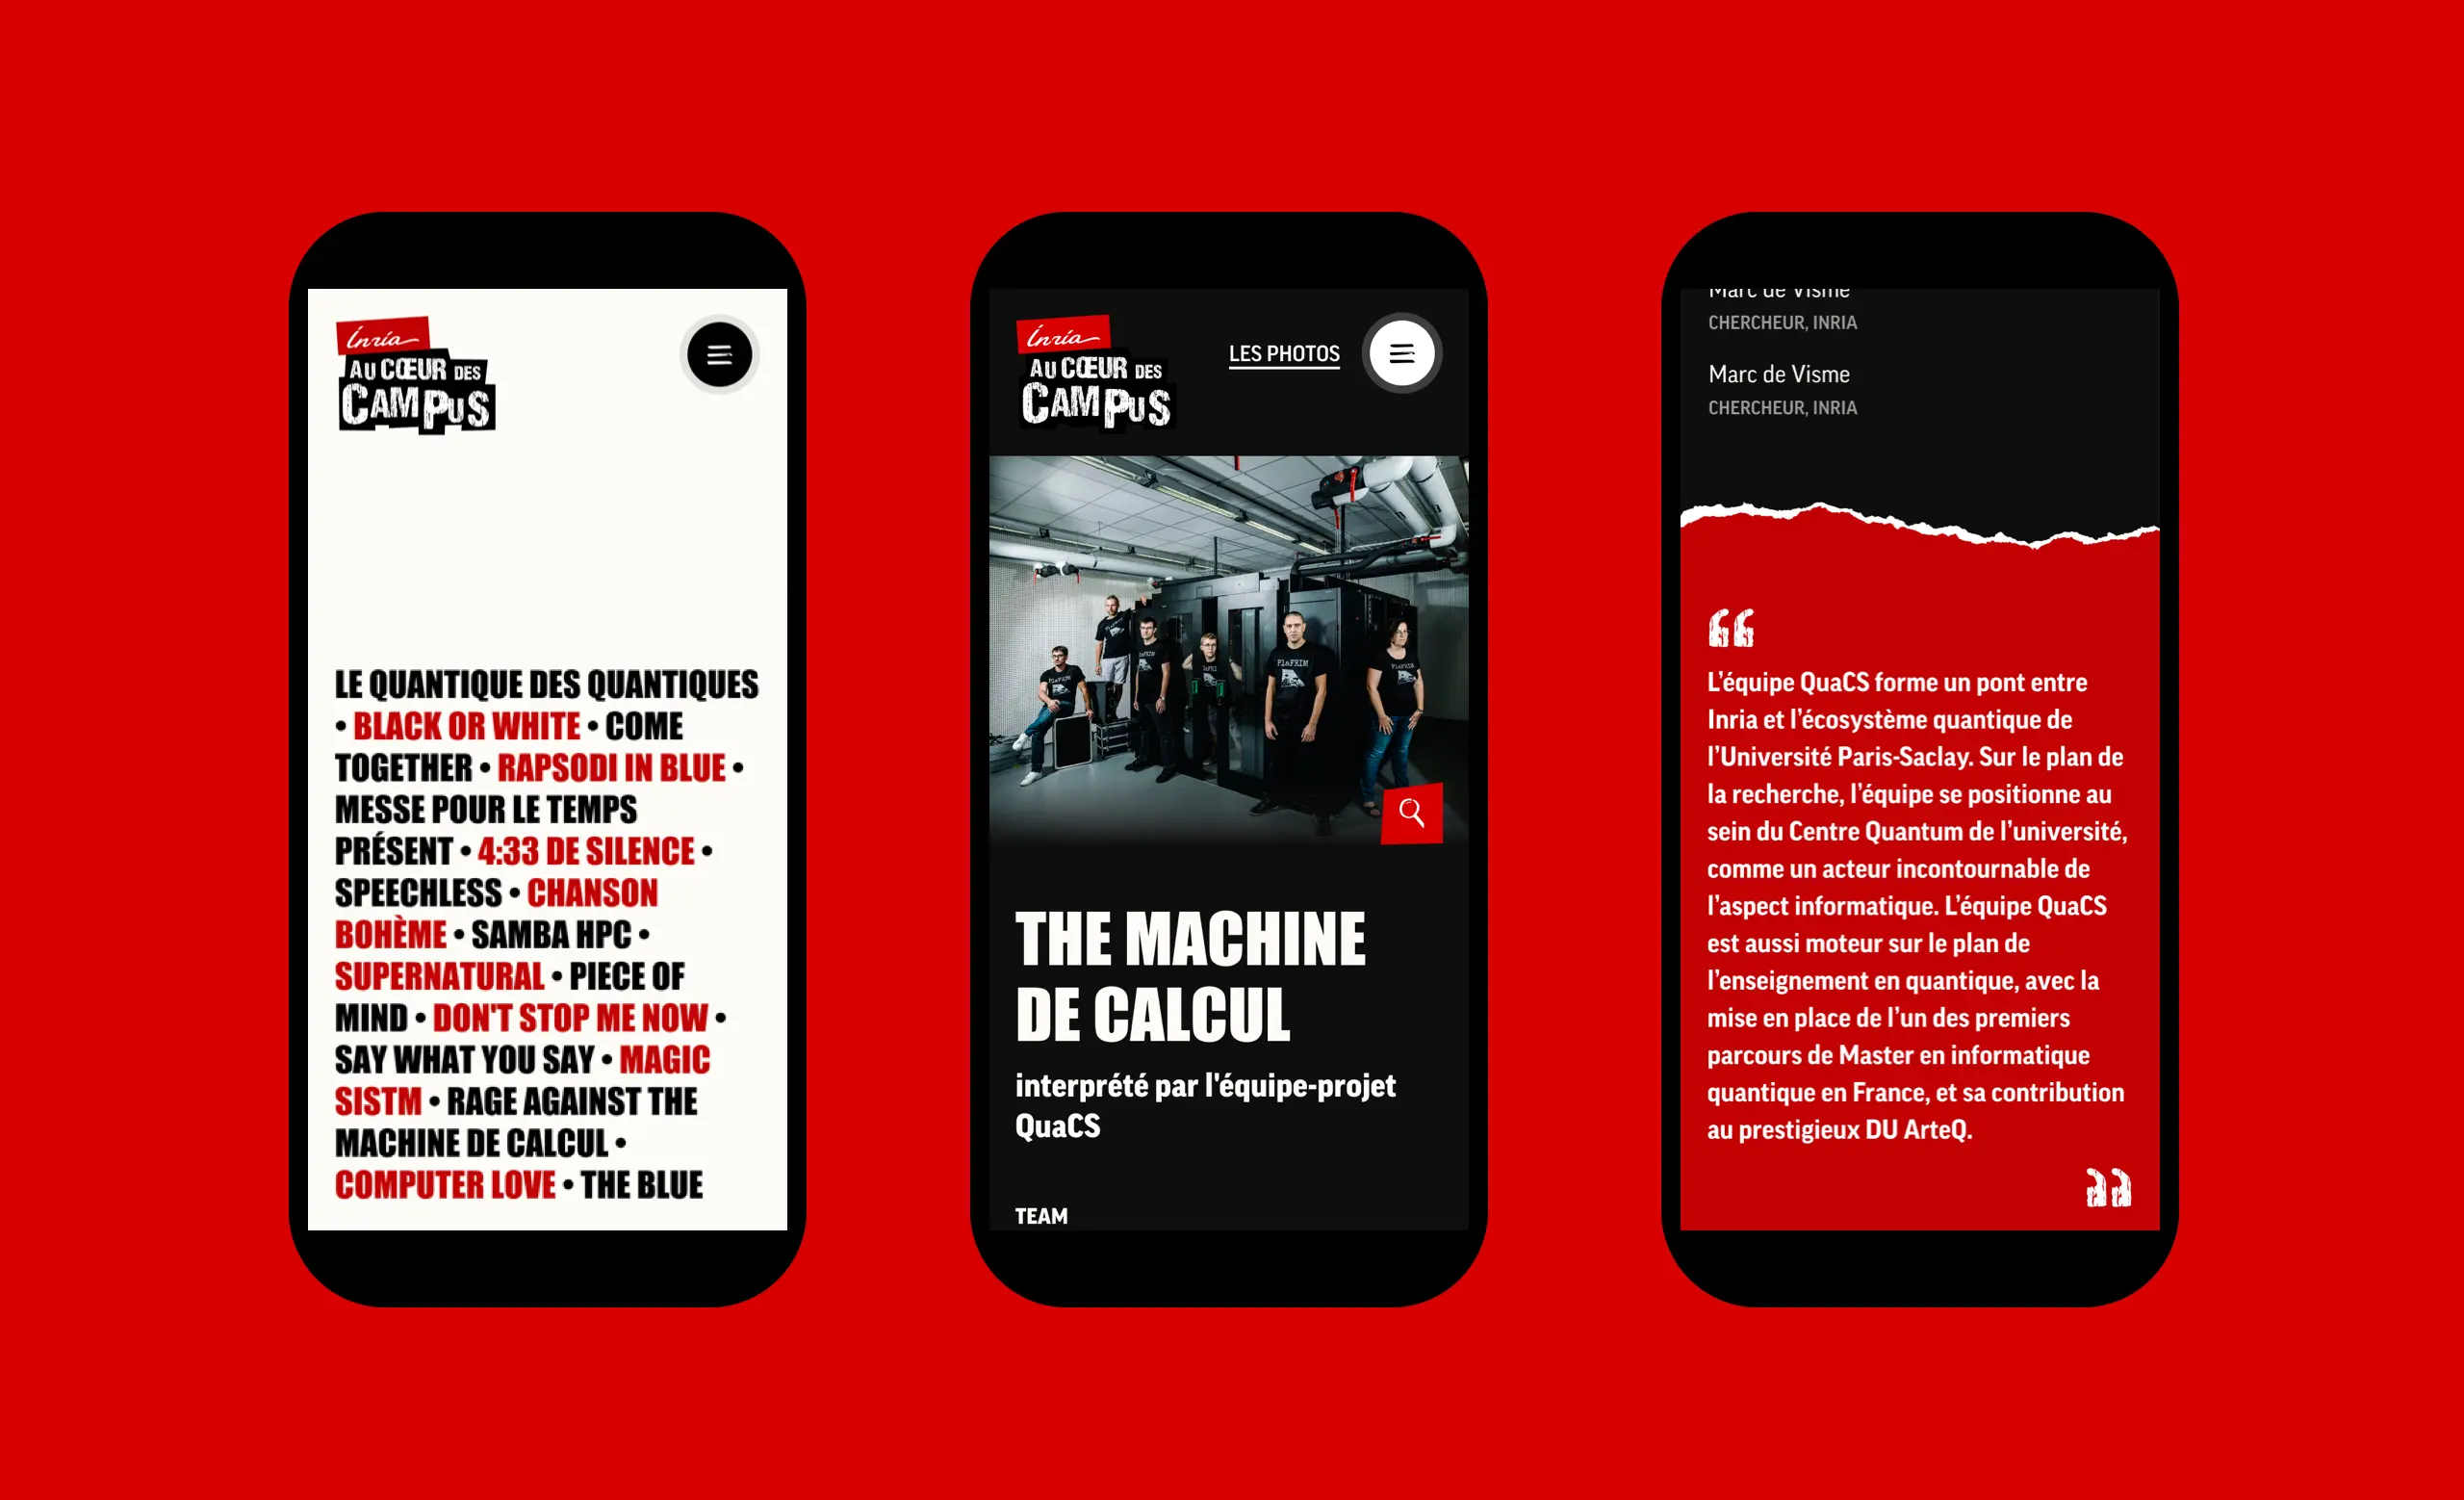 Aperçu de 3 écrans mobile, avec l'accueil, une page détail et une citation